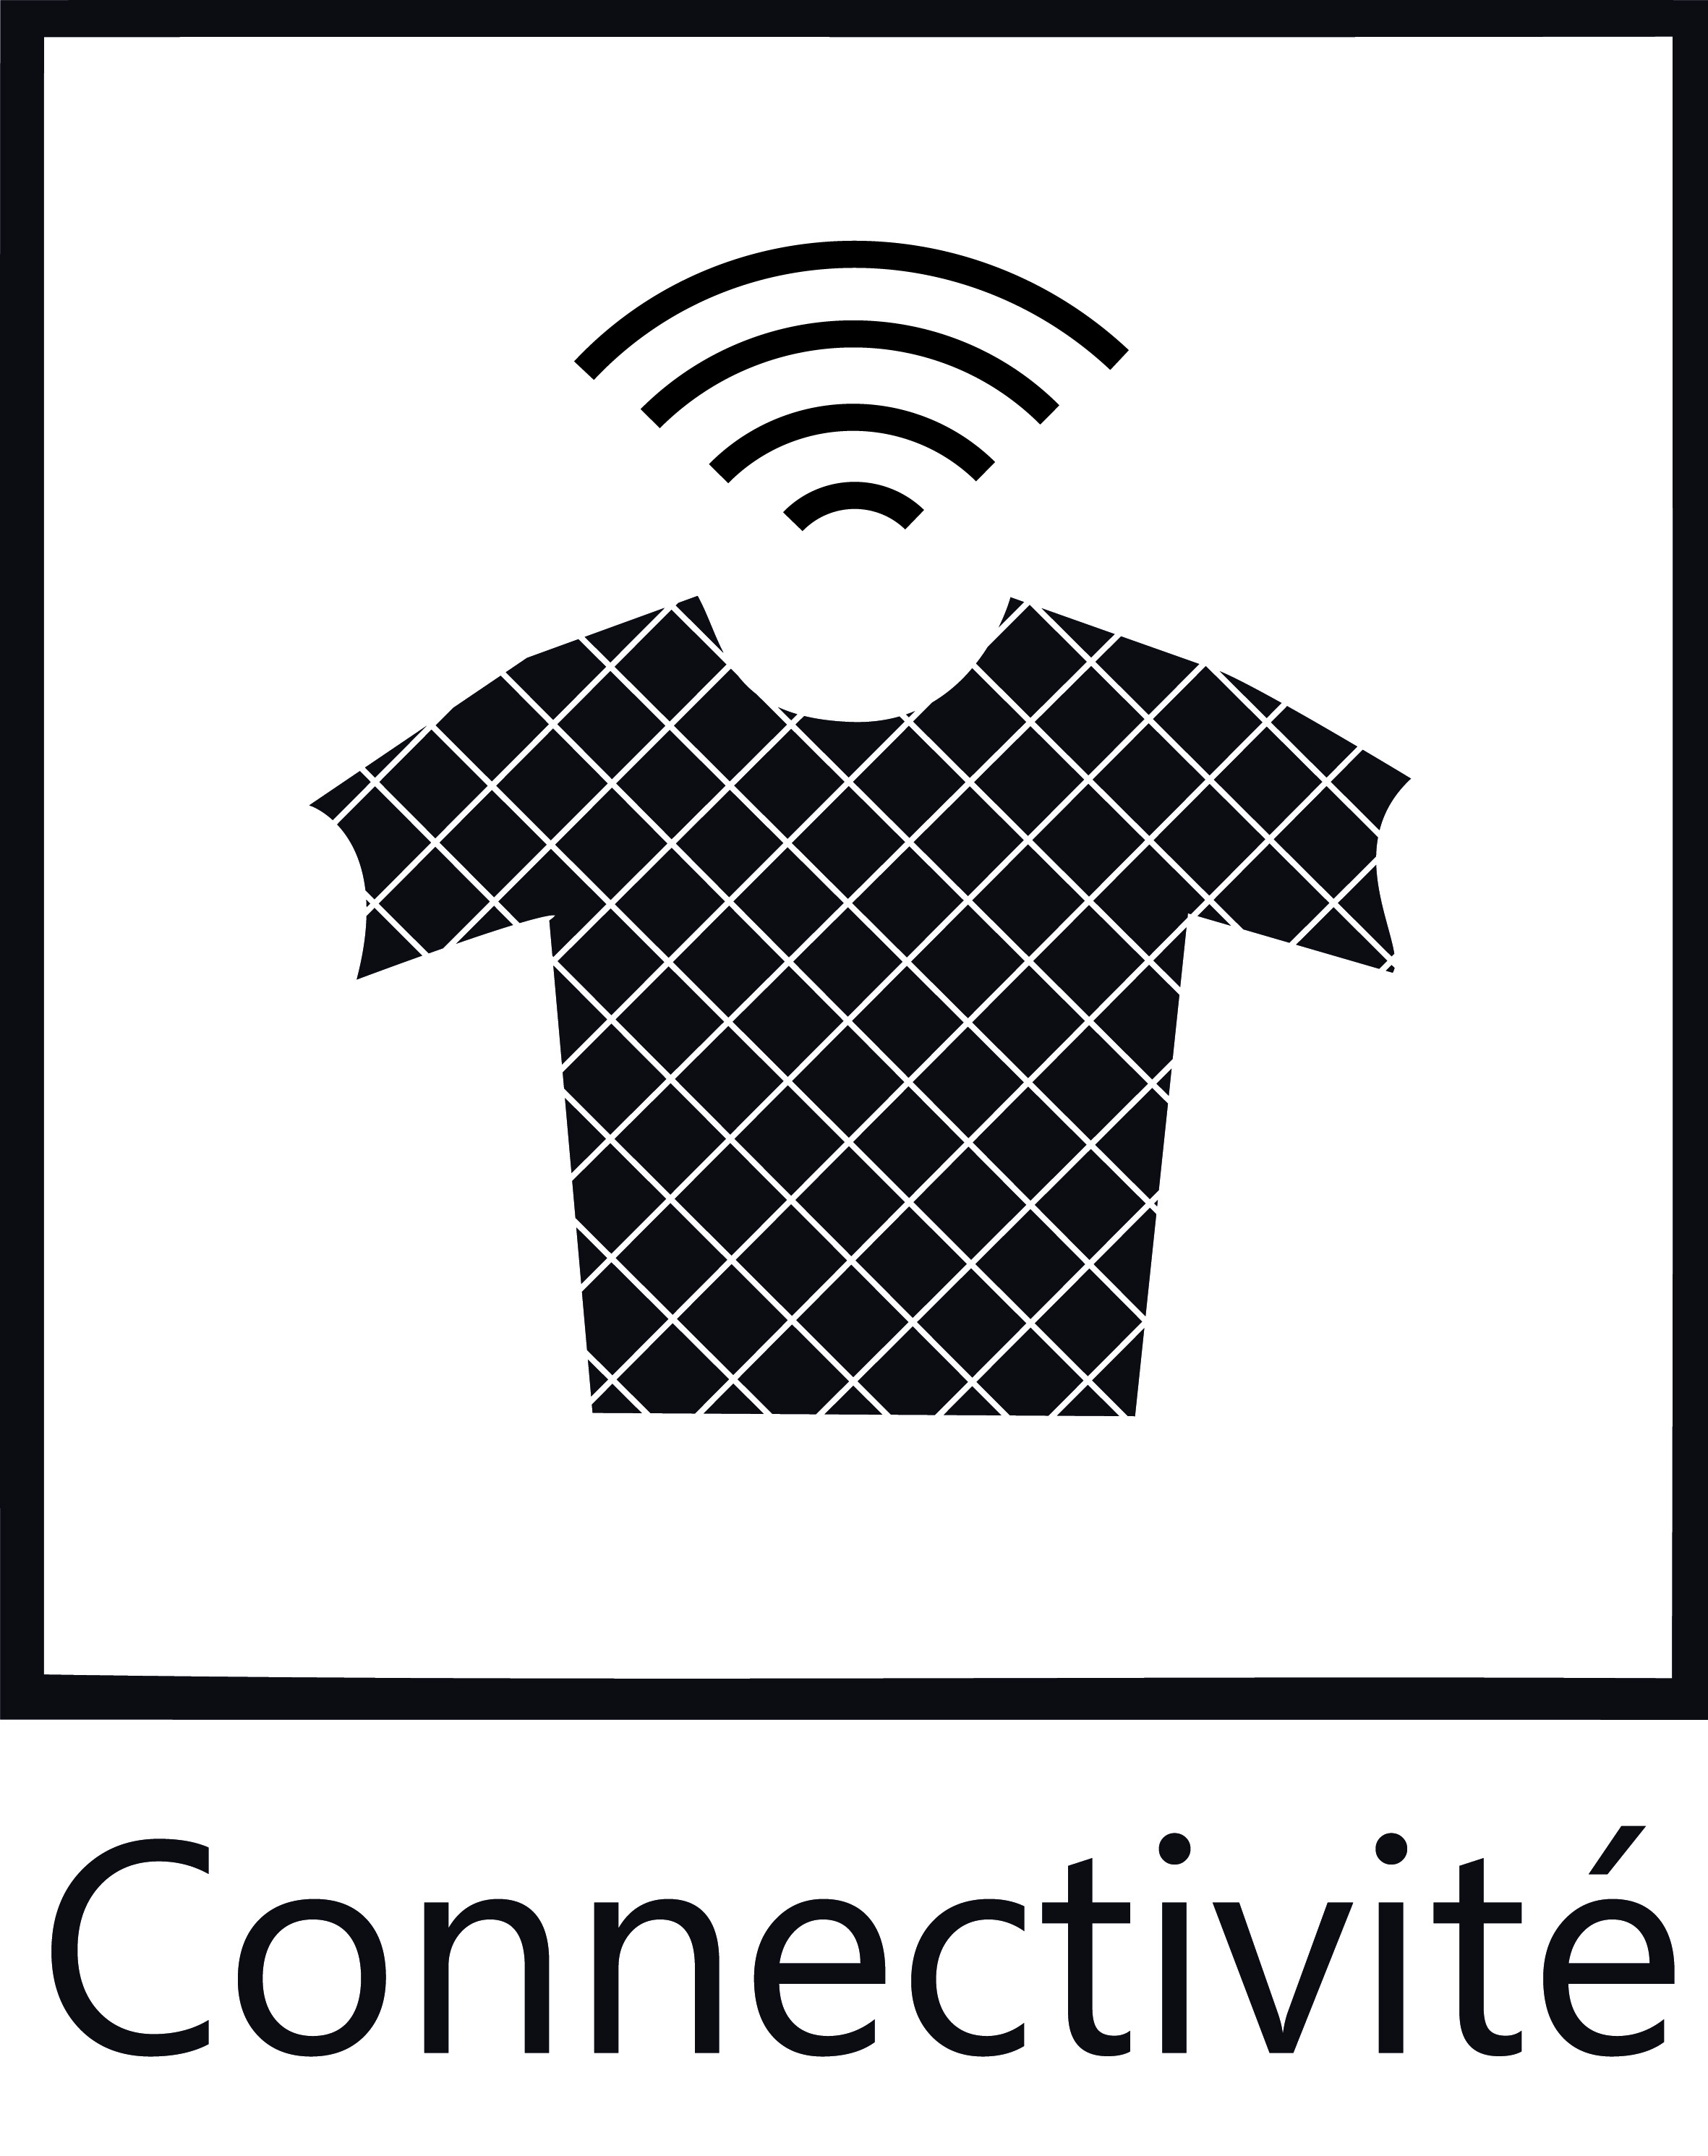 Connectivit